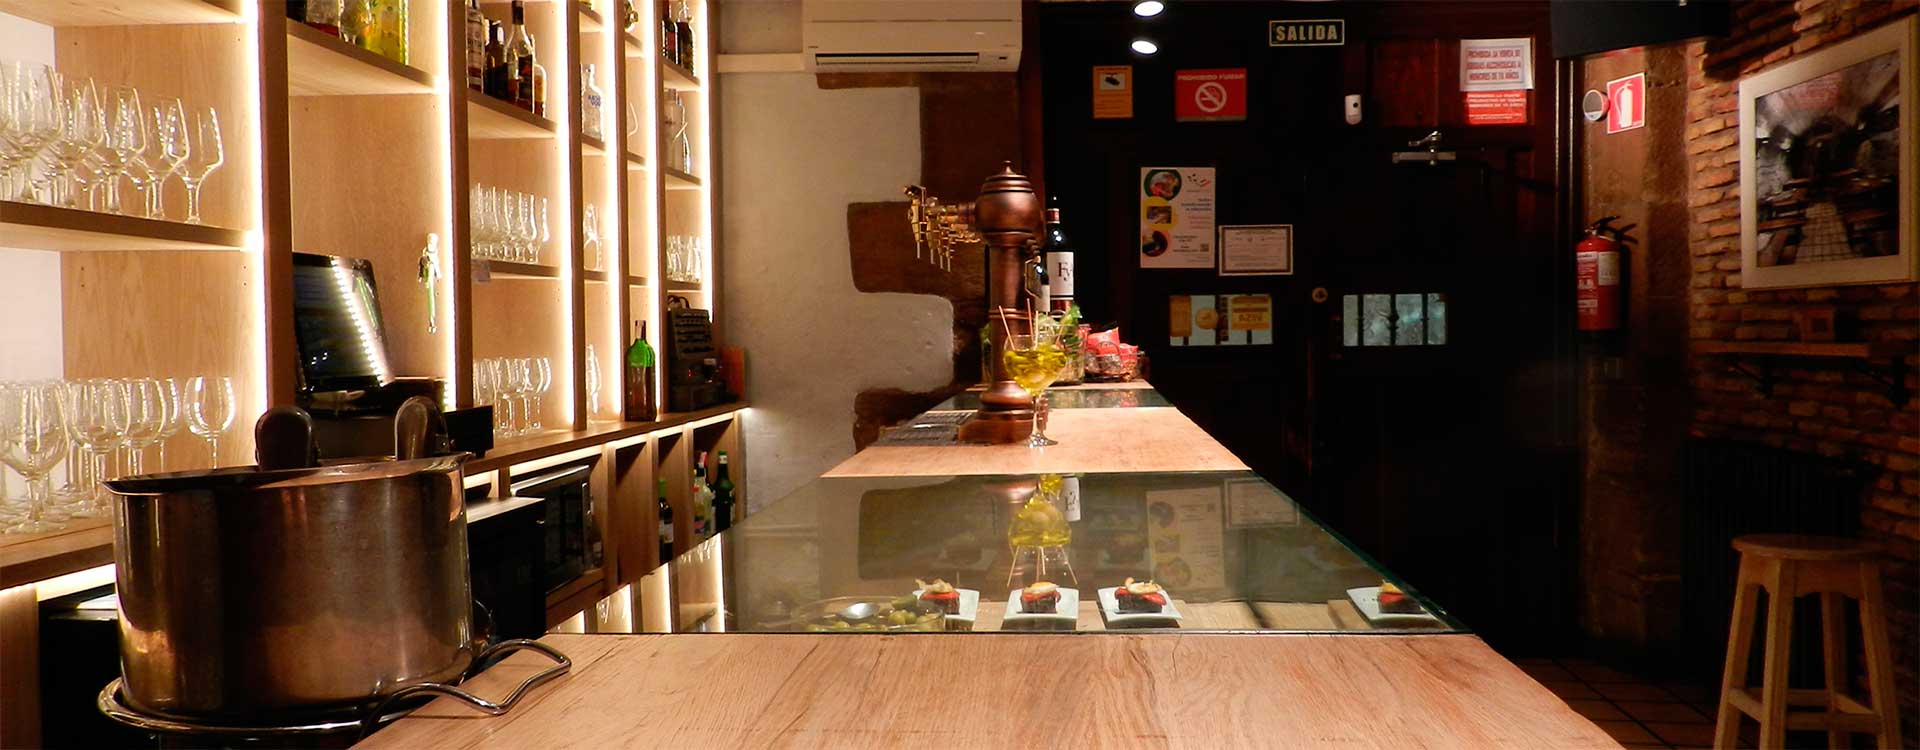 Reservar Bar Restaurante Sidreria o Pension en Viana Navarra